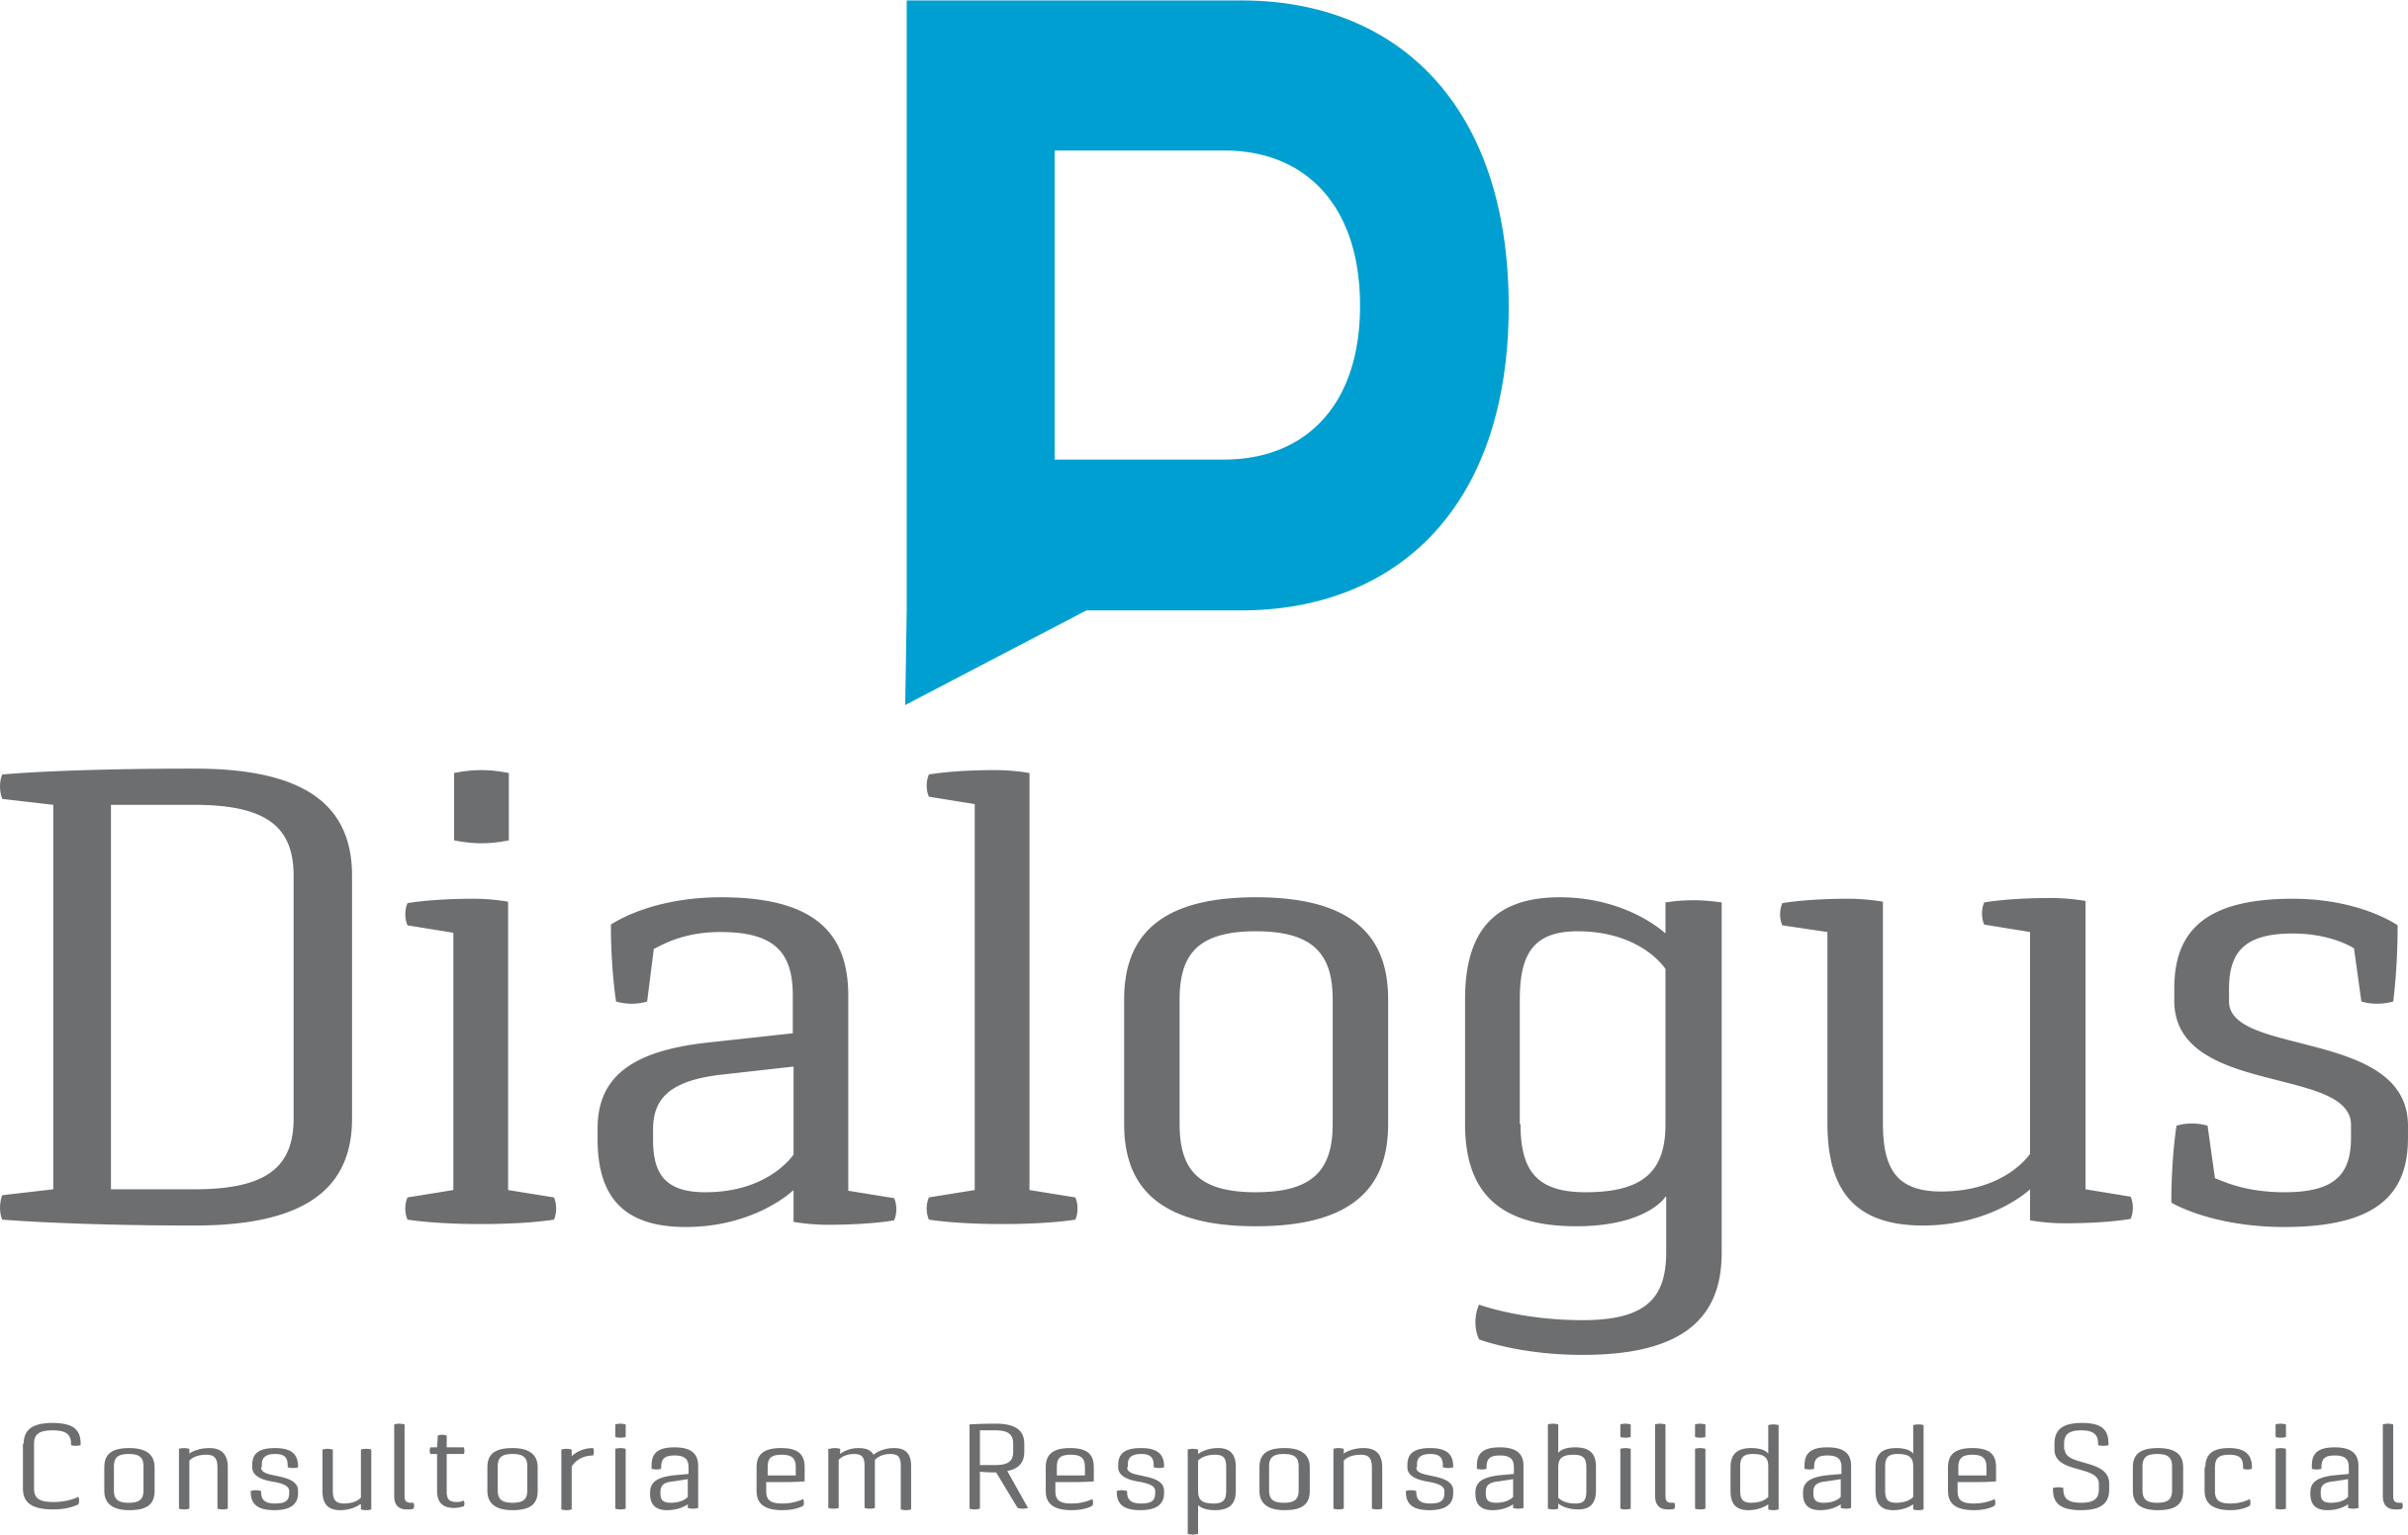 Dialogus Responsabilidade Social - Consultoria - Gestão de Pessoas - Fortaleza/CE